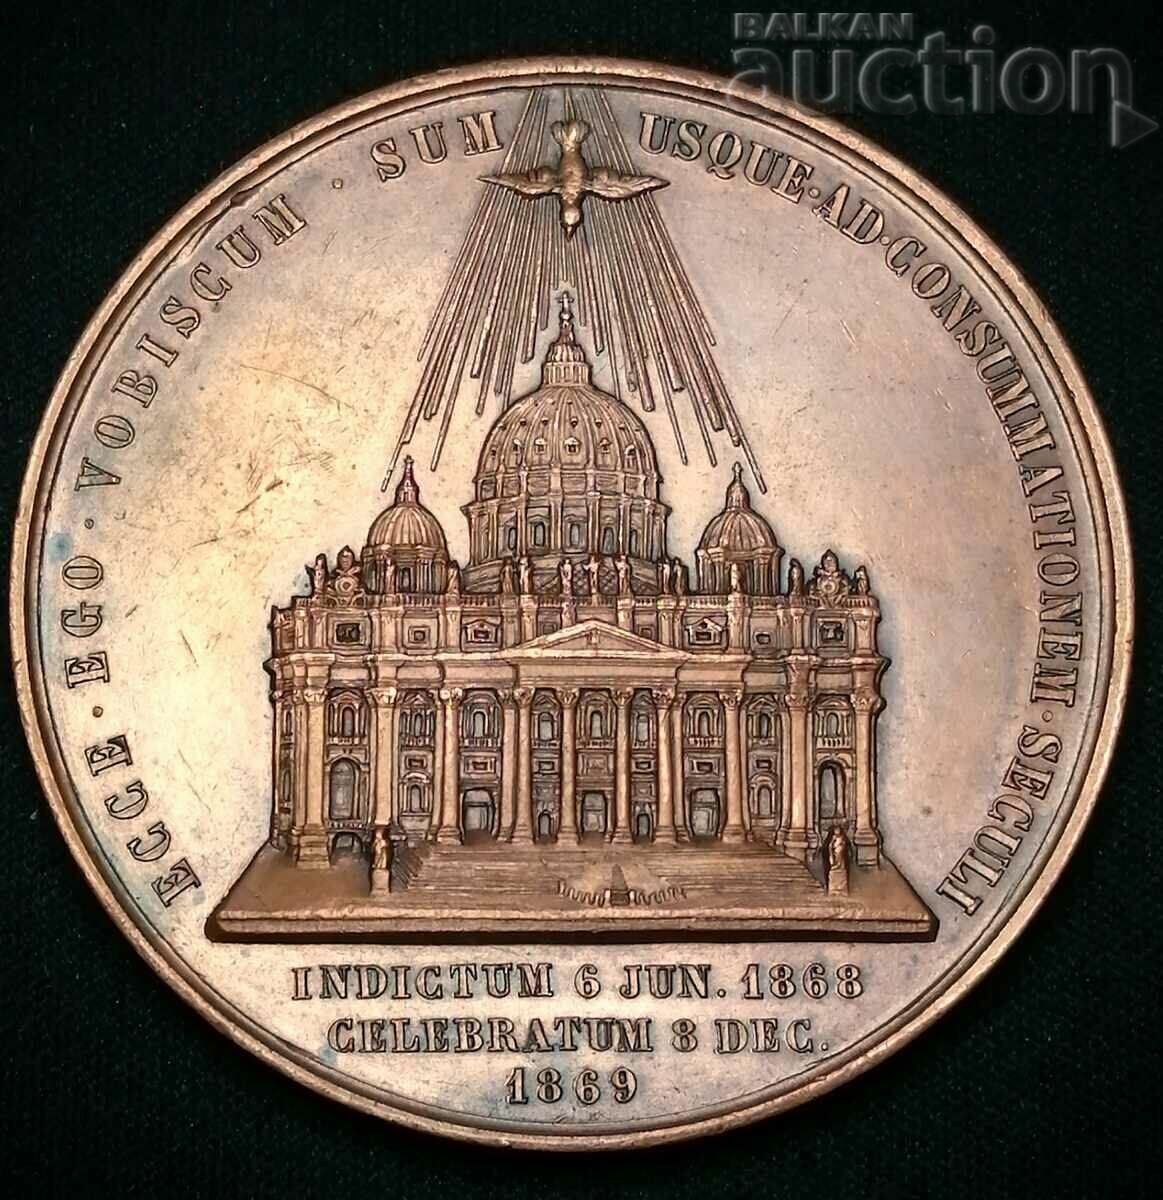 Pius IX 1869 First Vatican Council Medal